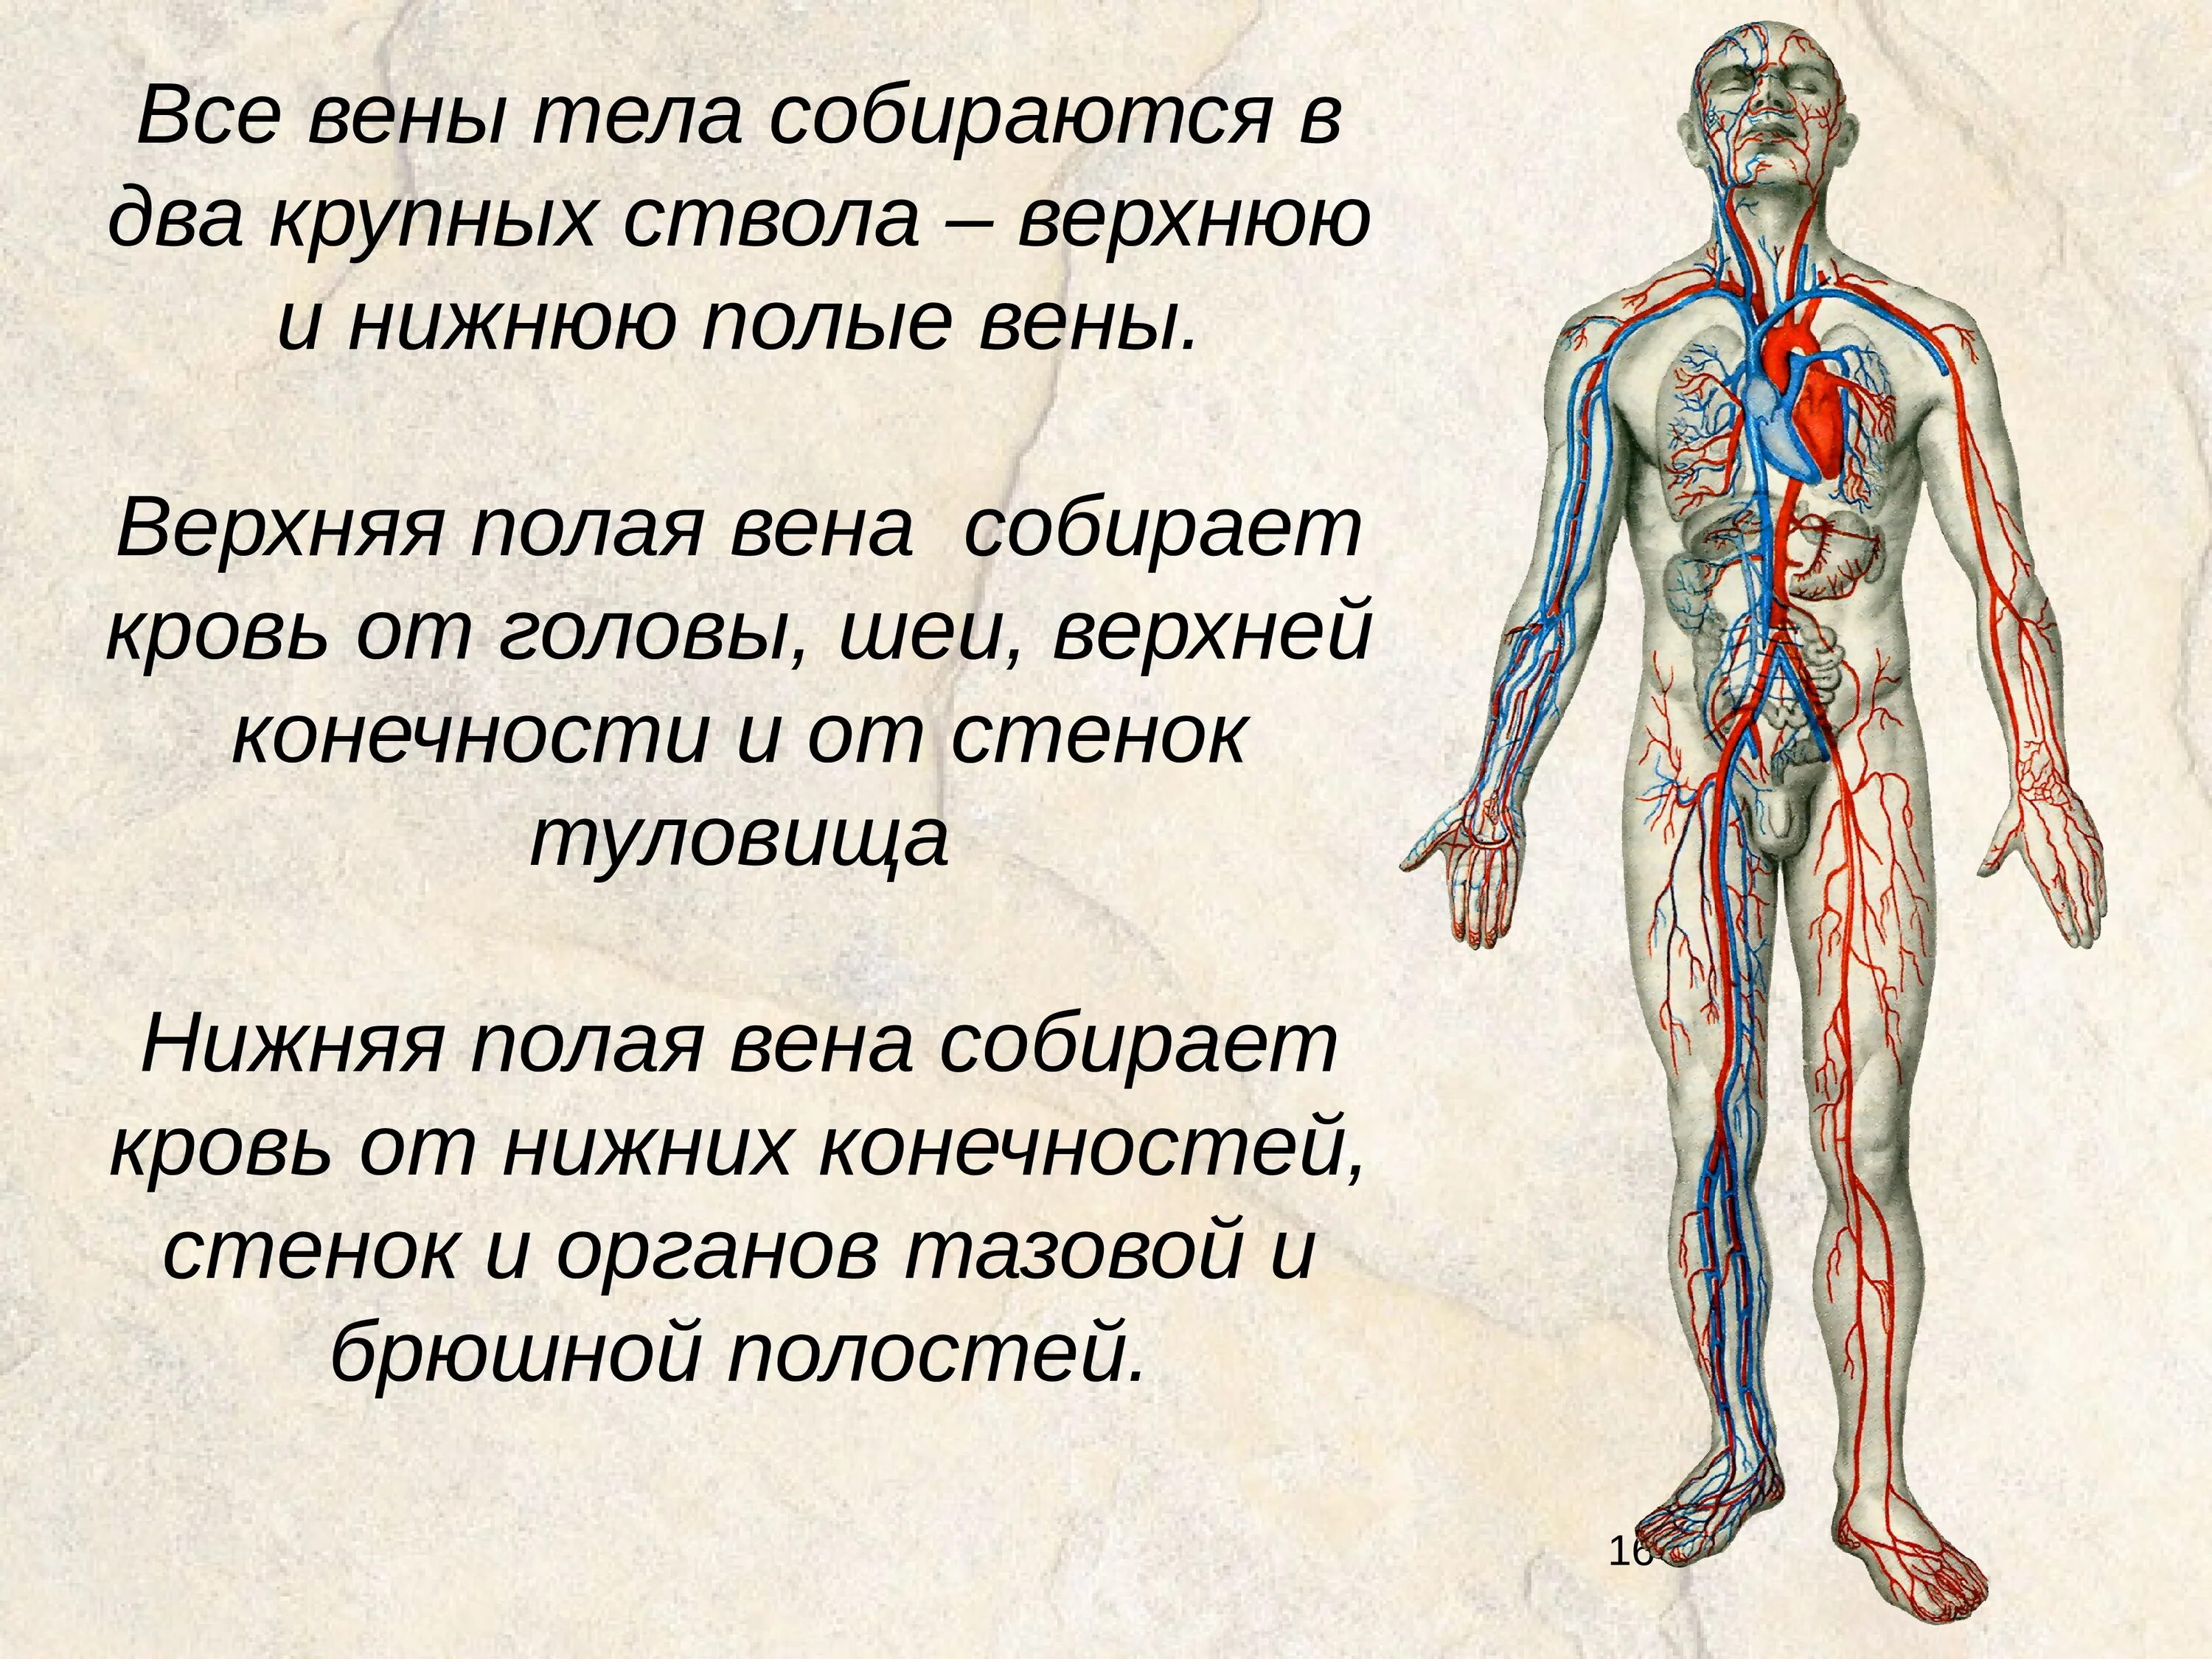 Самая большая вена как называется у человека. Вены организма. Основные вены организма. Вены верхней части тела.